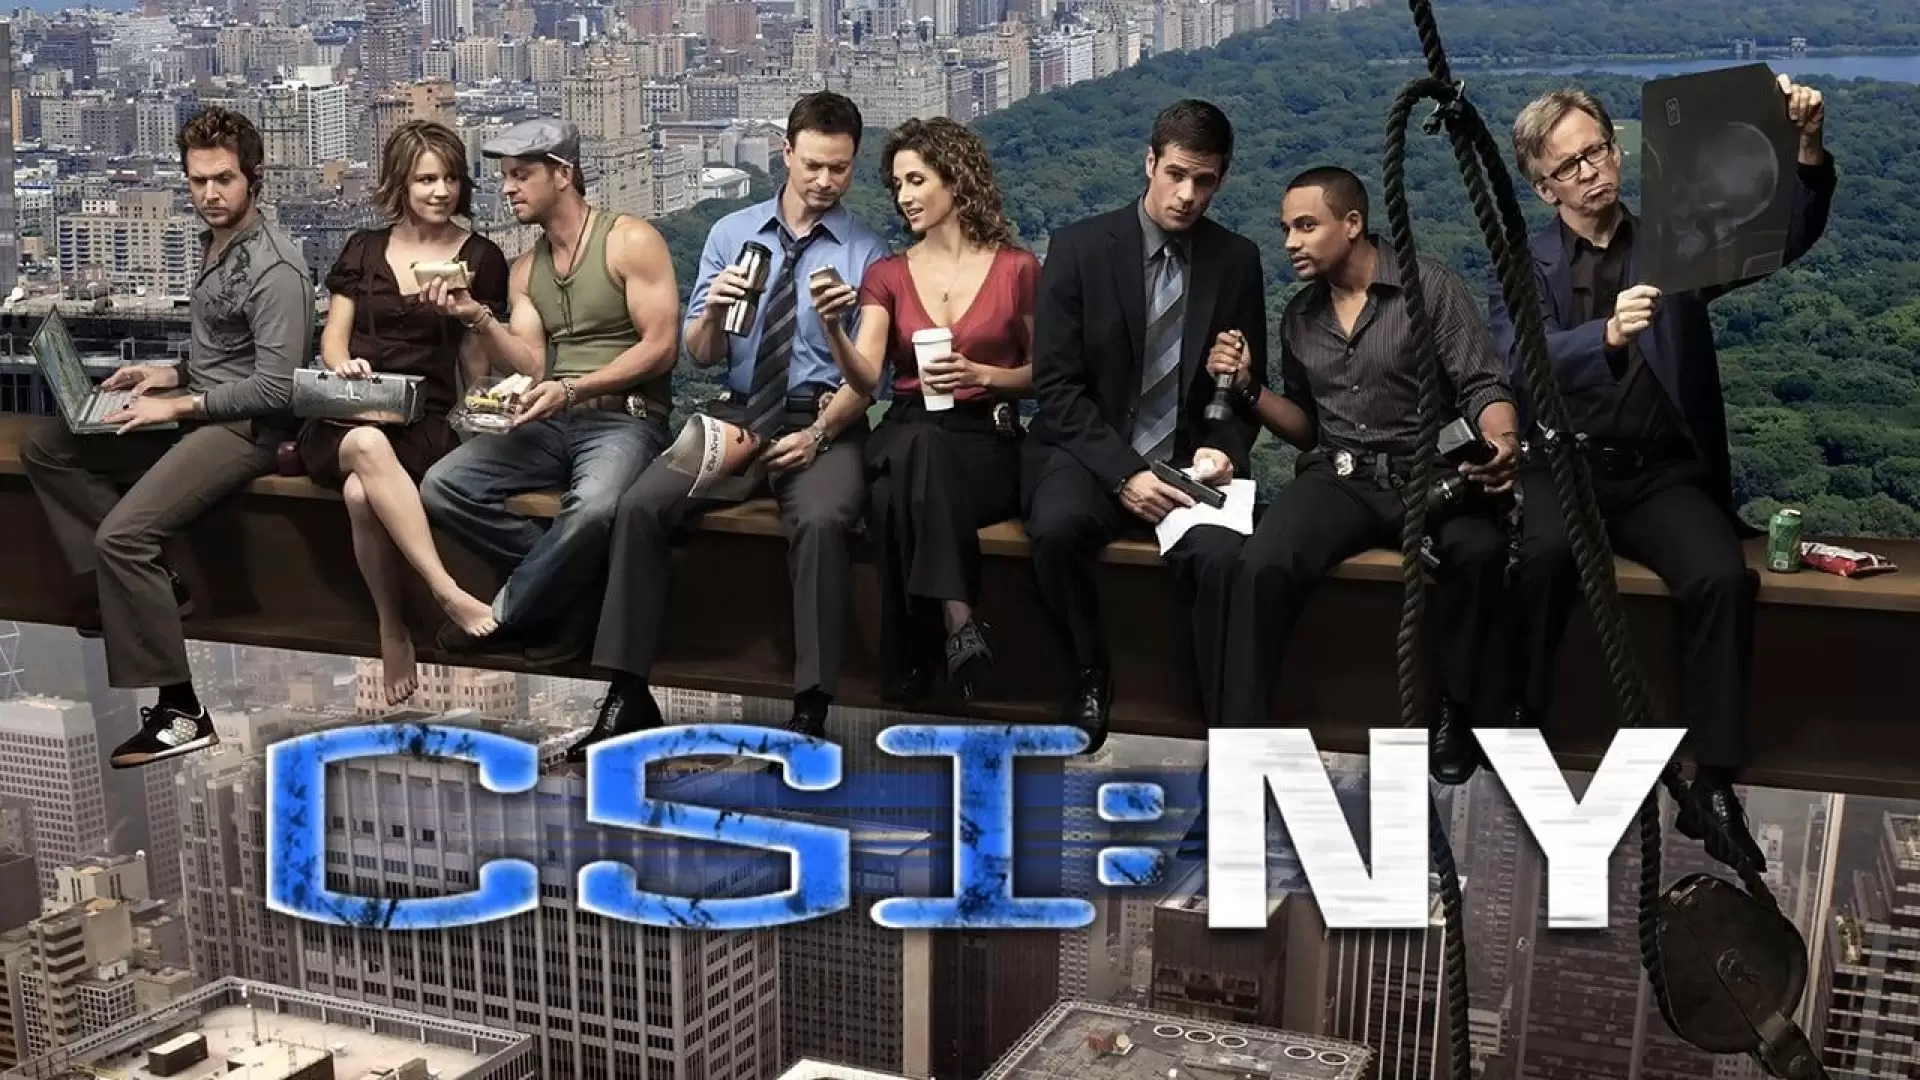 دانلود سریال CSI: NY 2004